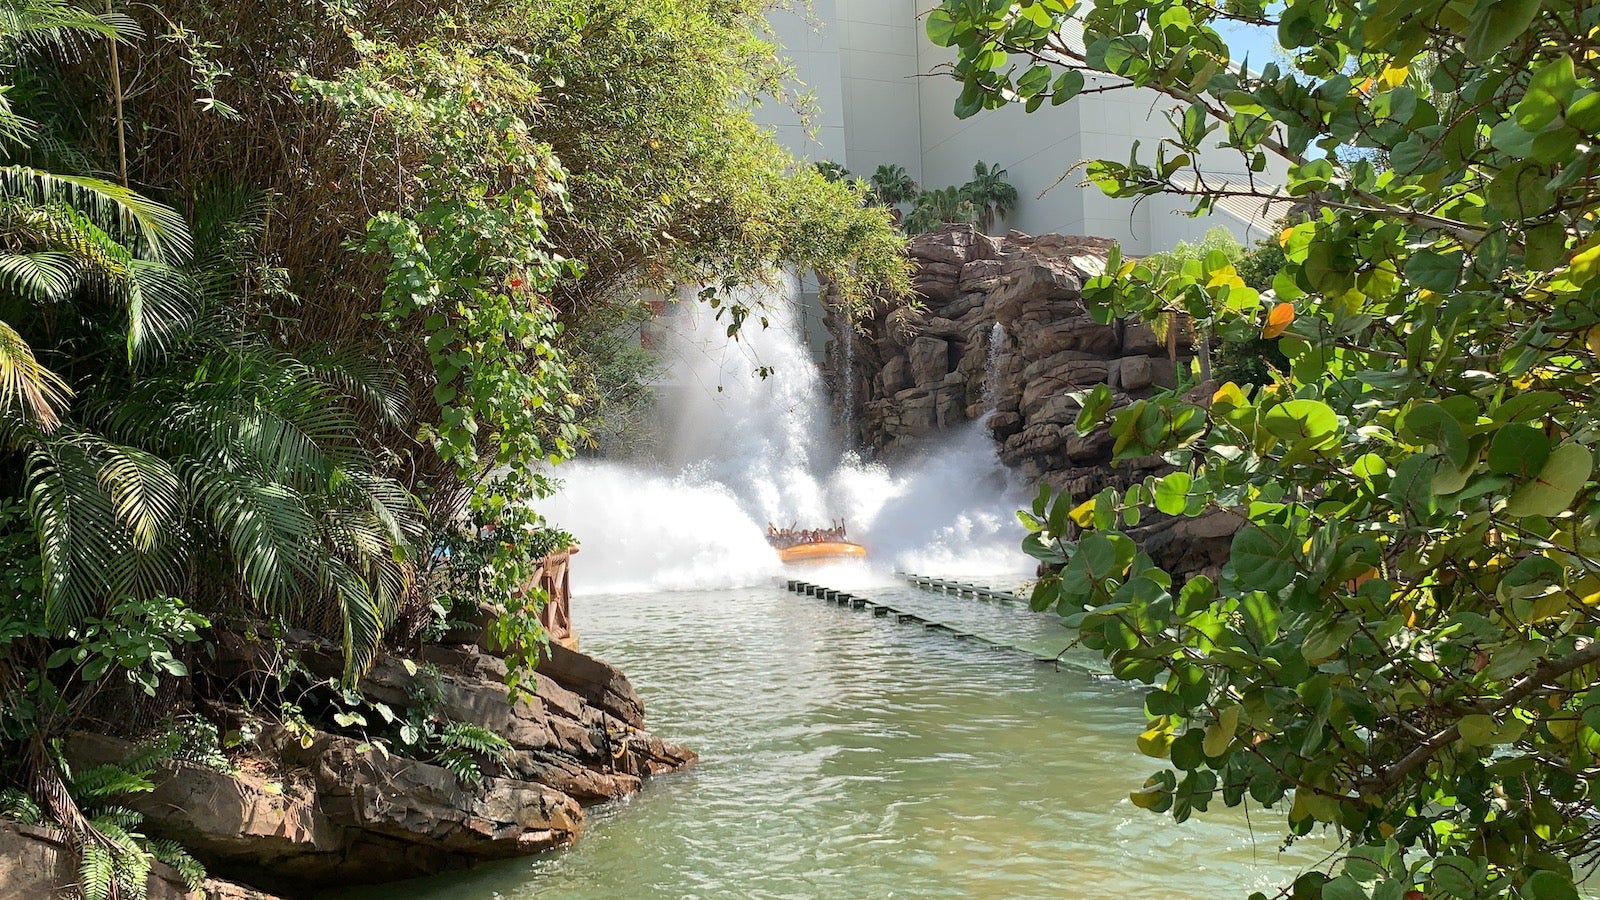 Jurassic Park River Adventure at Universal Orlando Resort